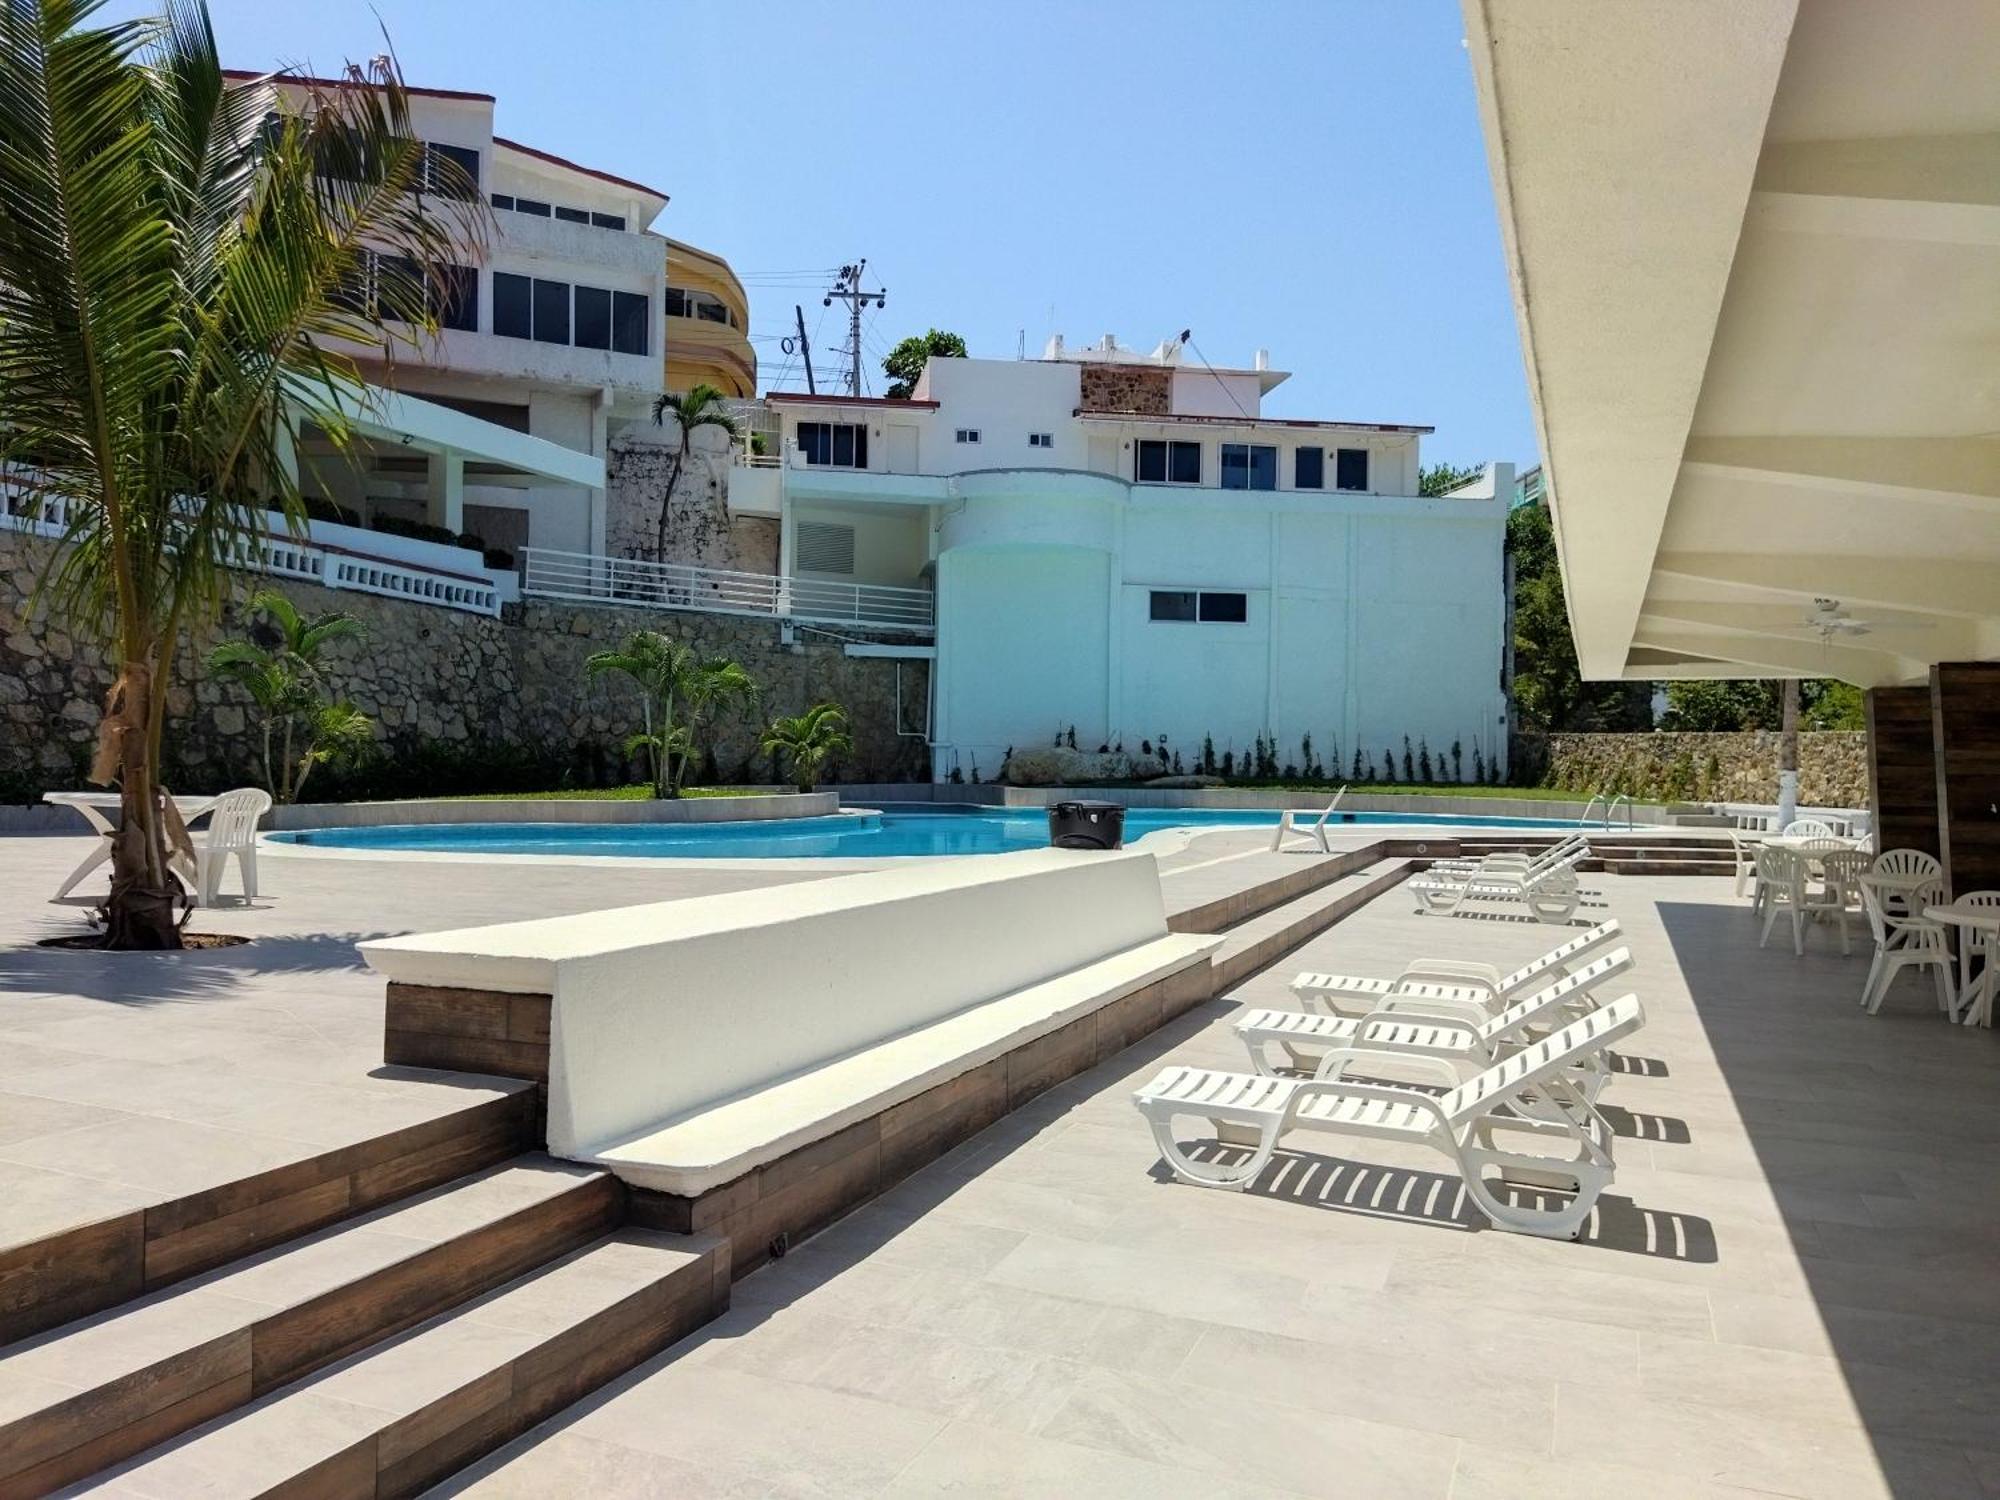 Hotel Aristos Acapulco Exterior foto